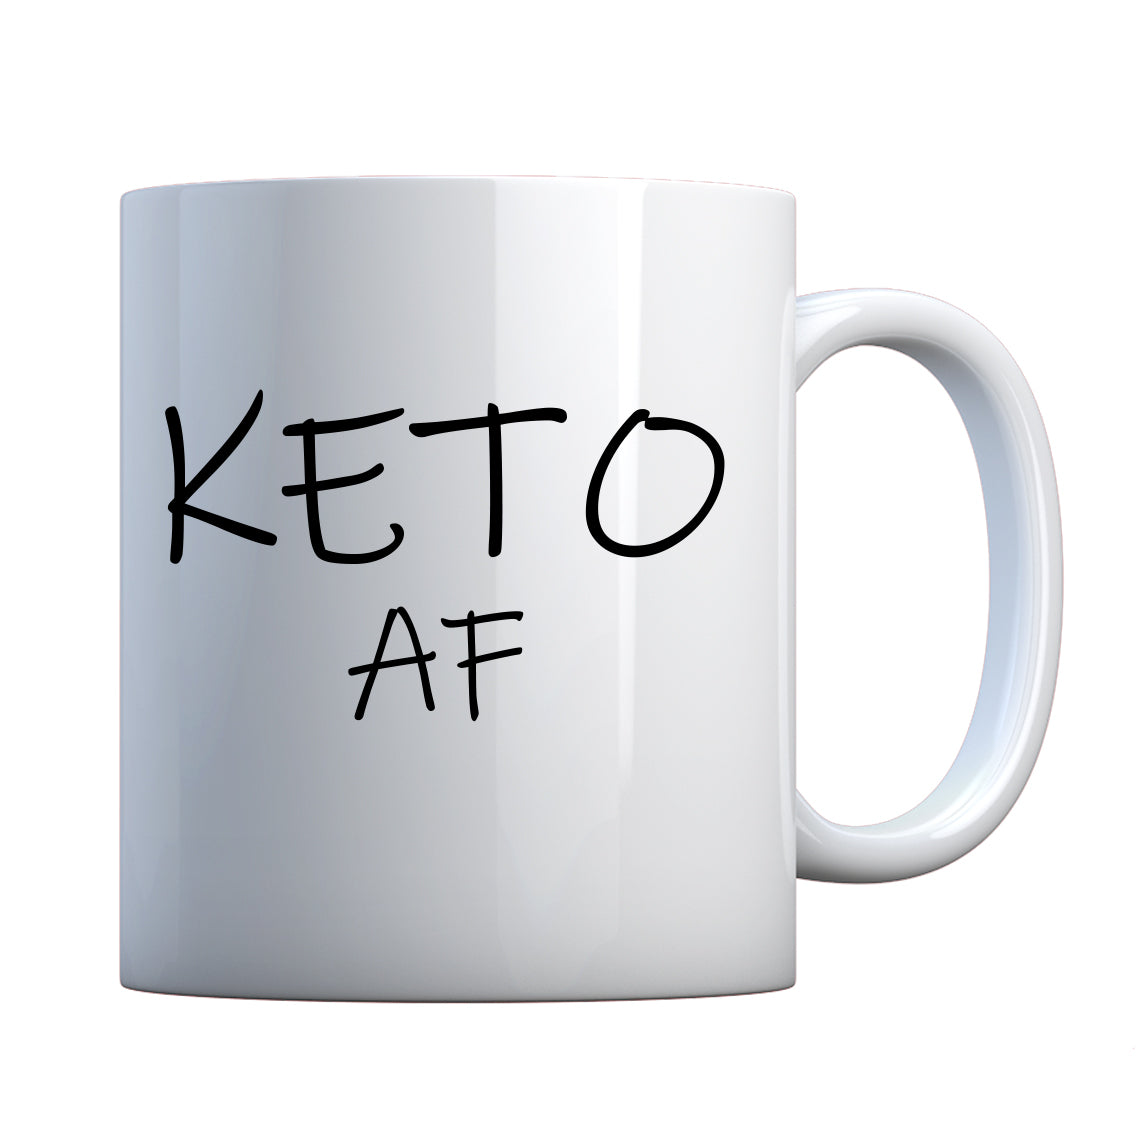 KETO AF Ceramic Gift Mug